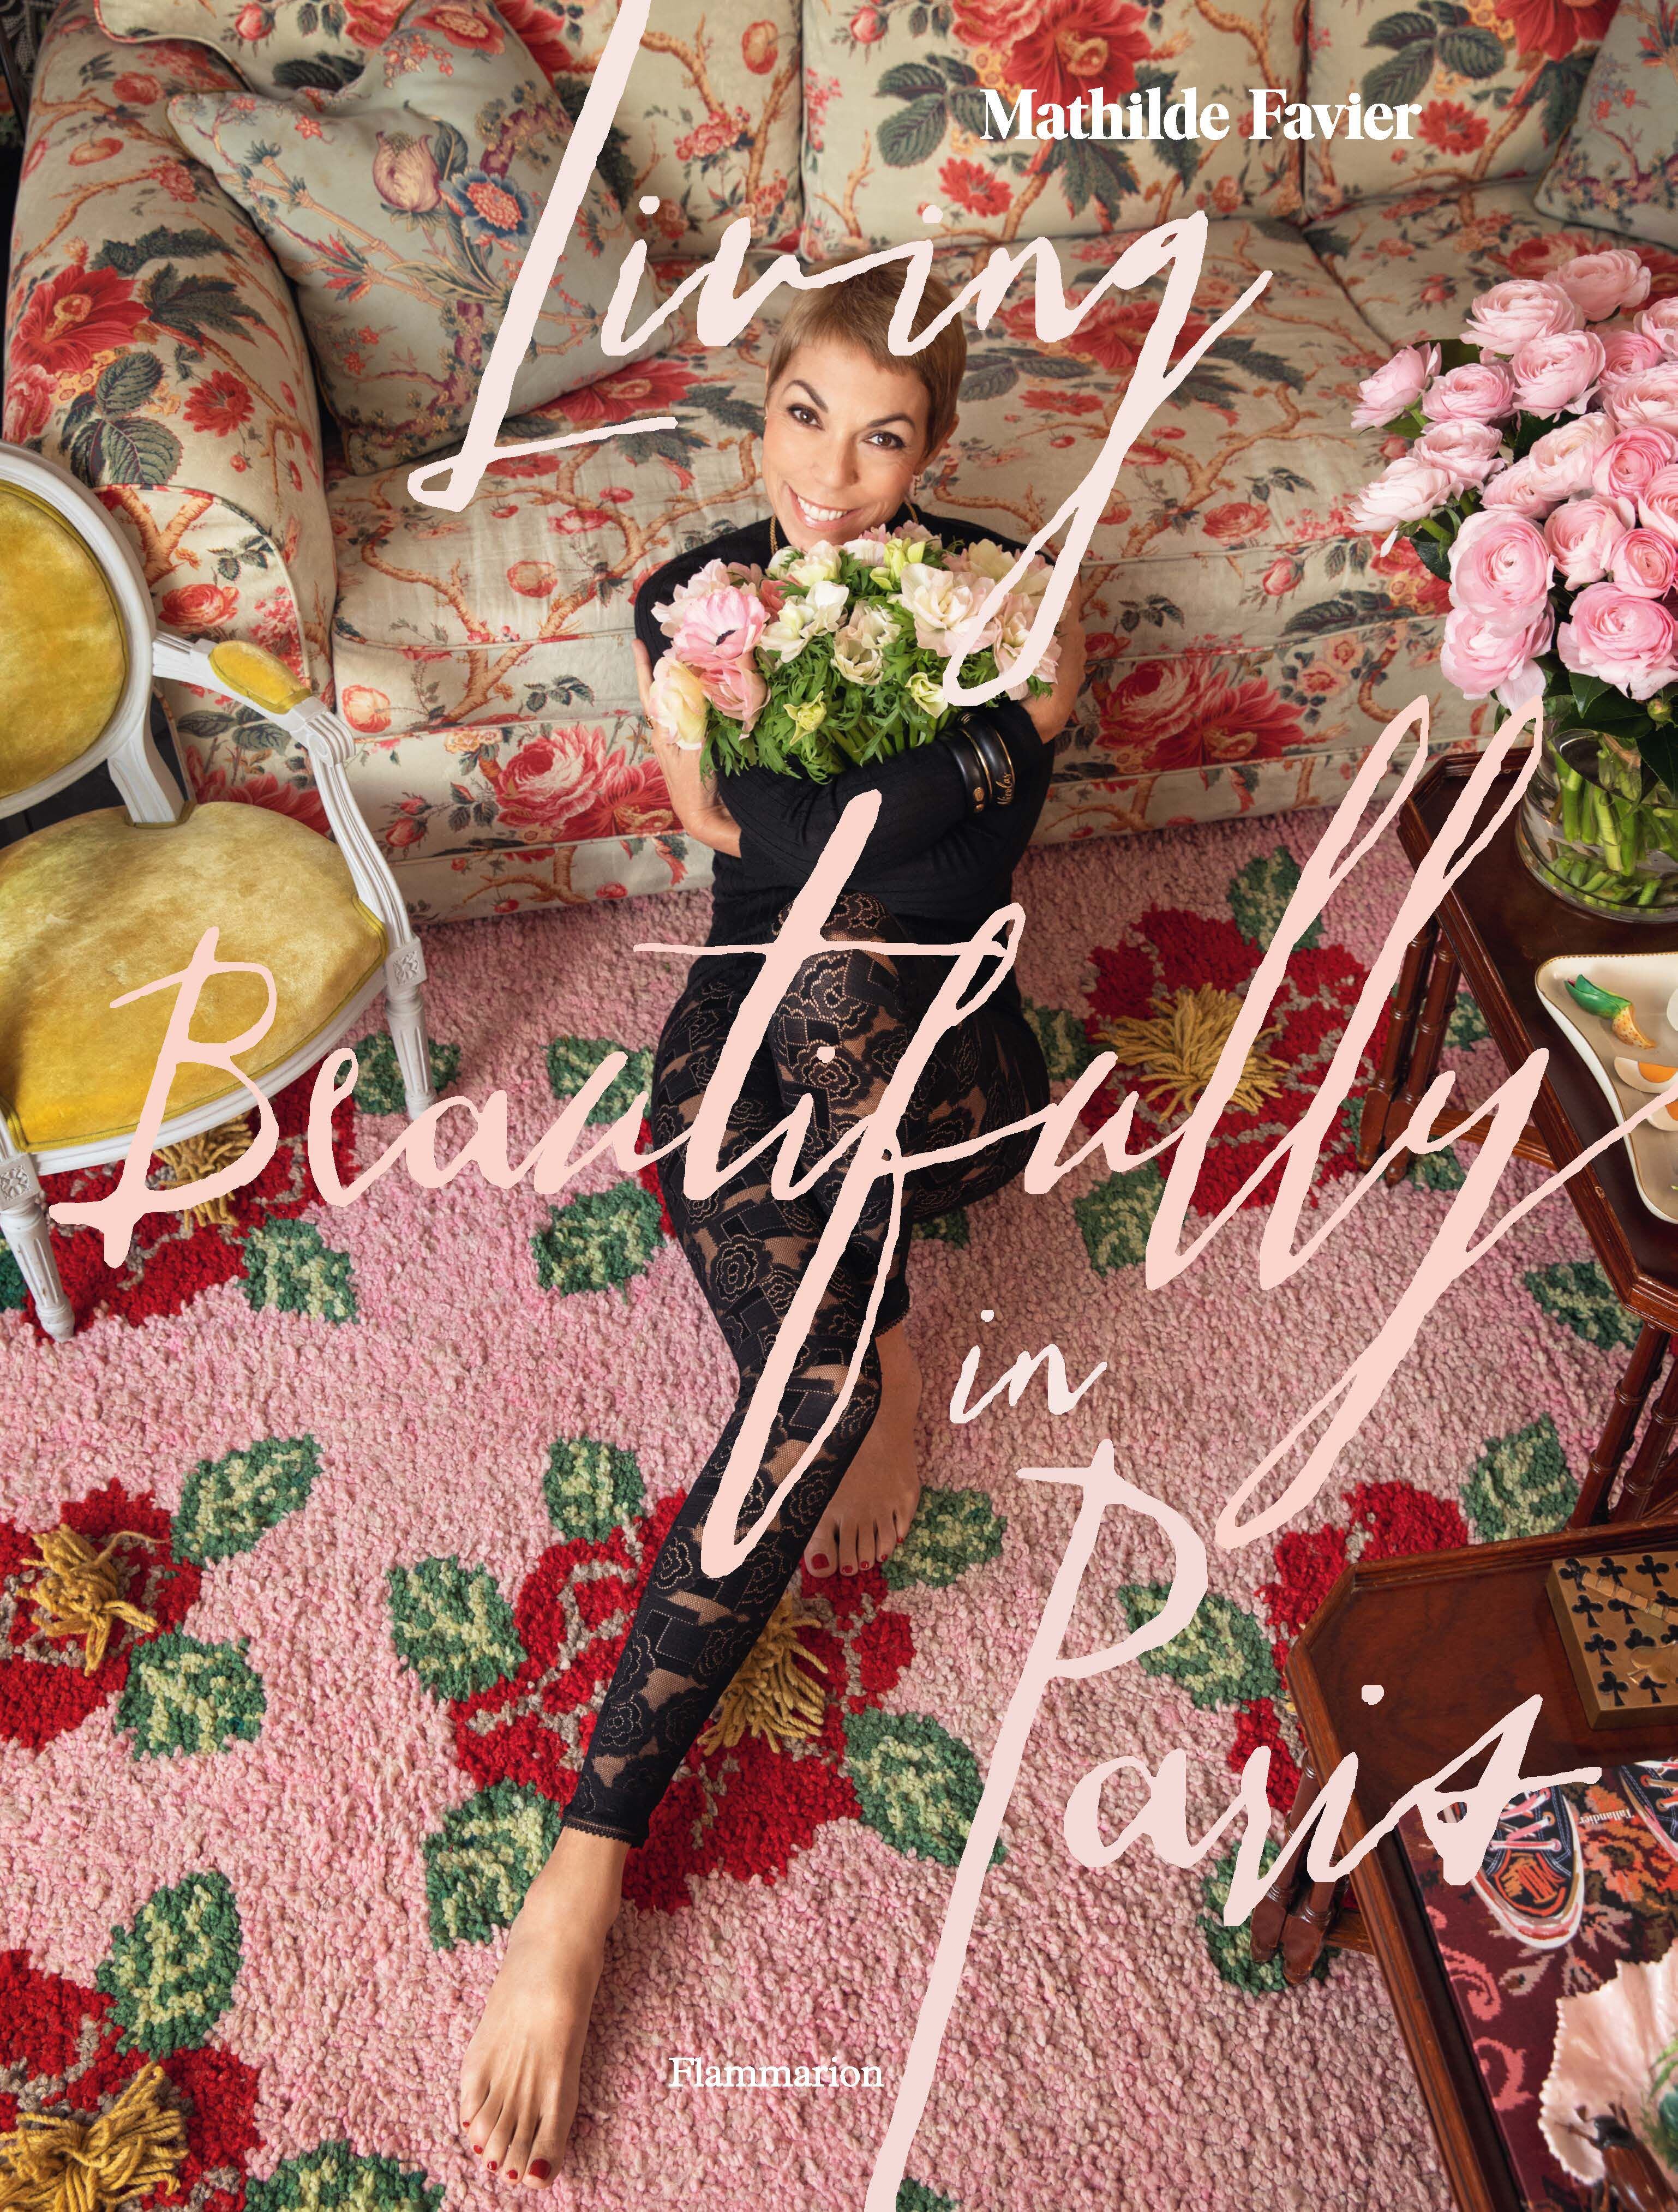 El libro de Favier se titula 'Living Beautifully in Paris' y rinde homenaje a la capital francesa y a sus famosos amigos parisinos.